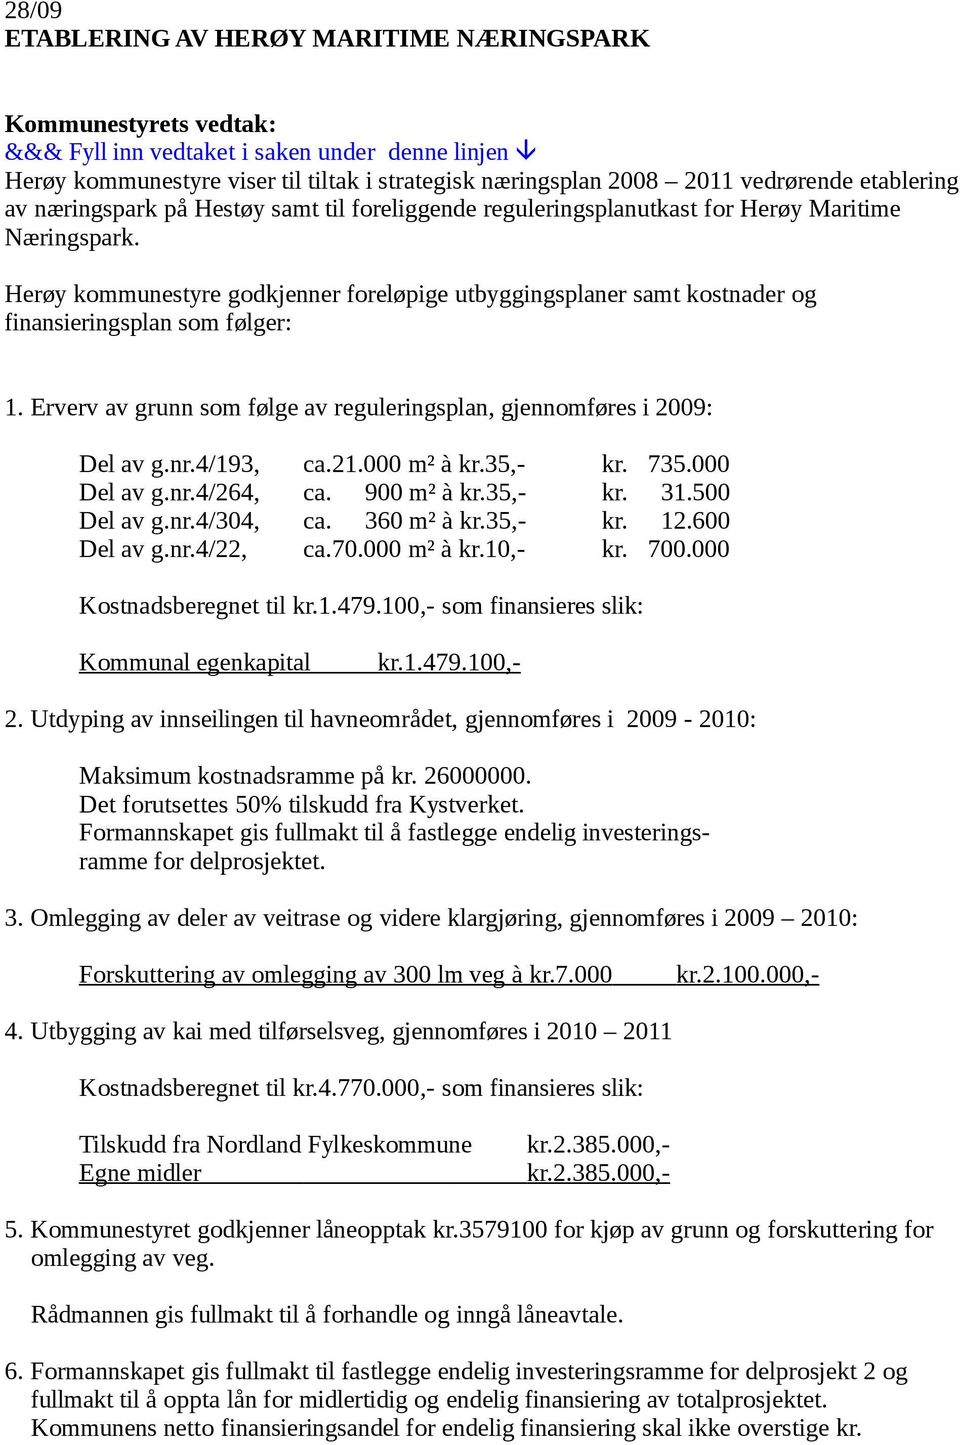 Herøy kommunestyre godkjenner foreløpige utbyggingsplaner samt kostnader og finansieringsplan som følger: 1. Erverv av grunn som følge av reguleringsplan, gjennomføres i 2009: Del av g.nr.4/193, ca.